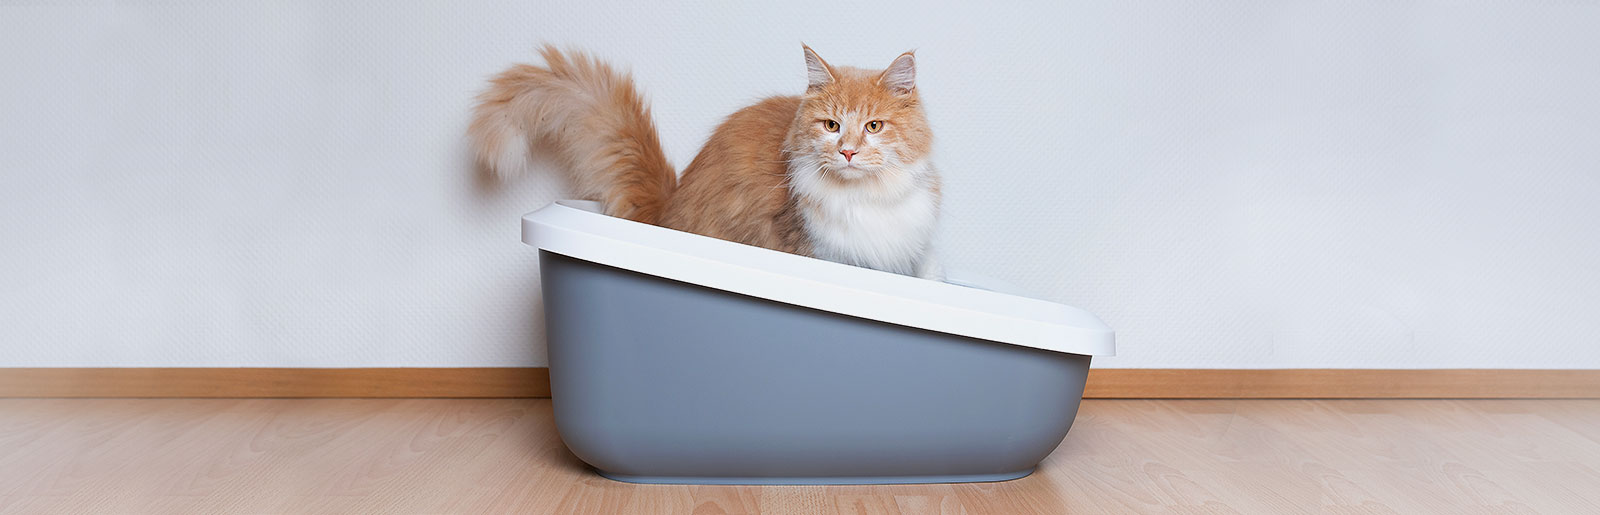 La diarrhée chez les chats : Causes et conseils